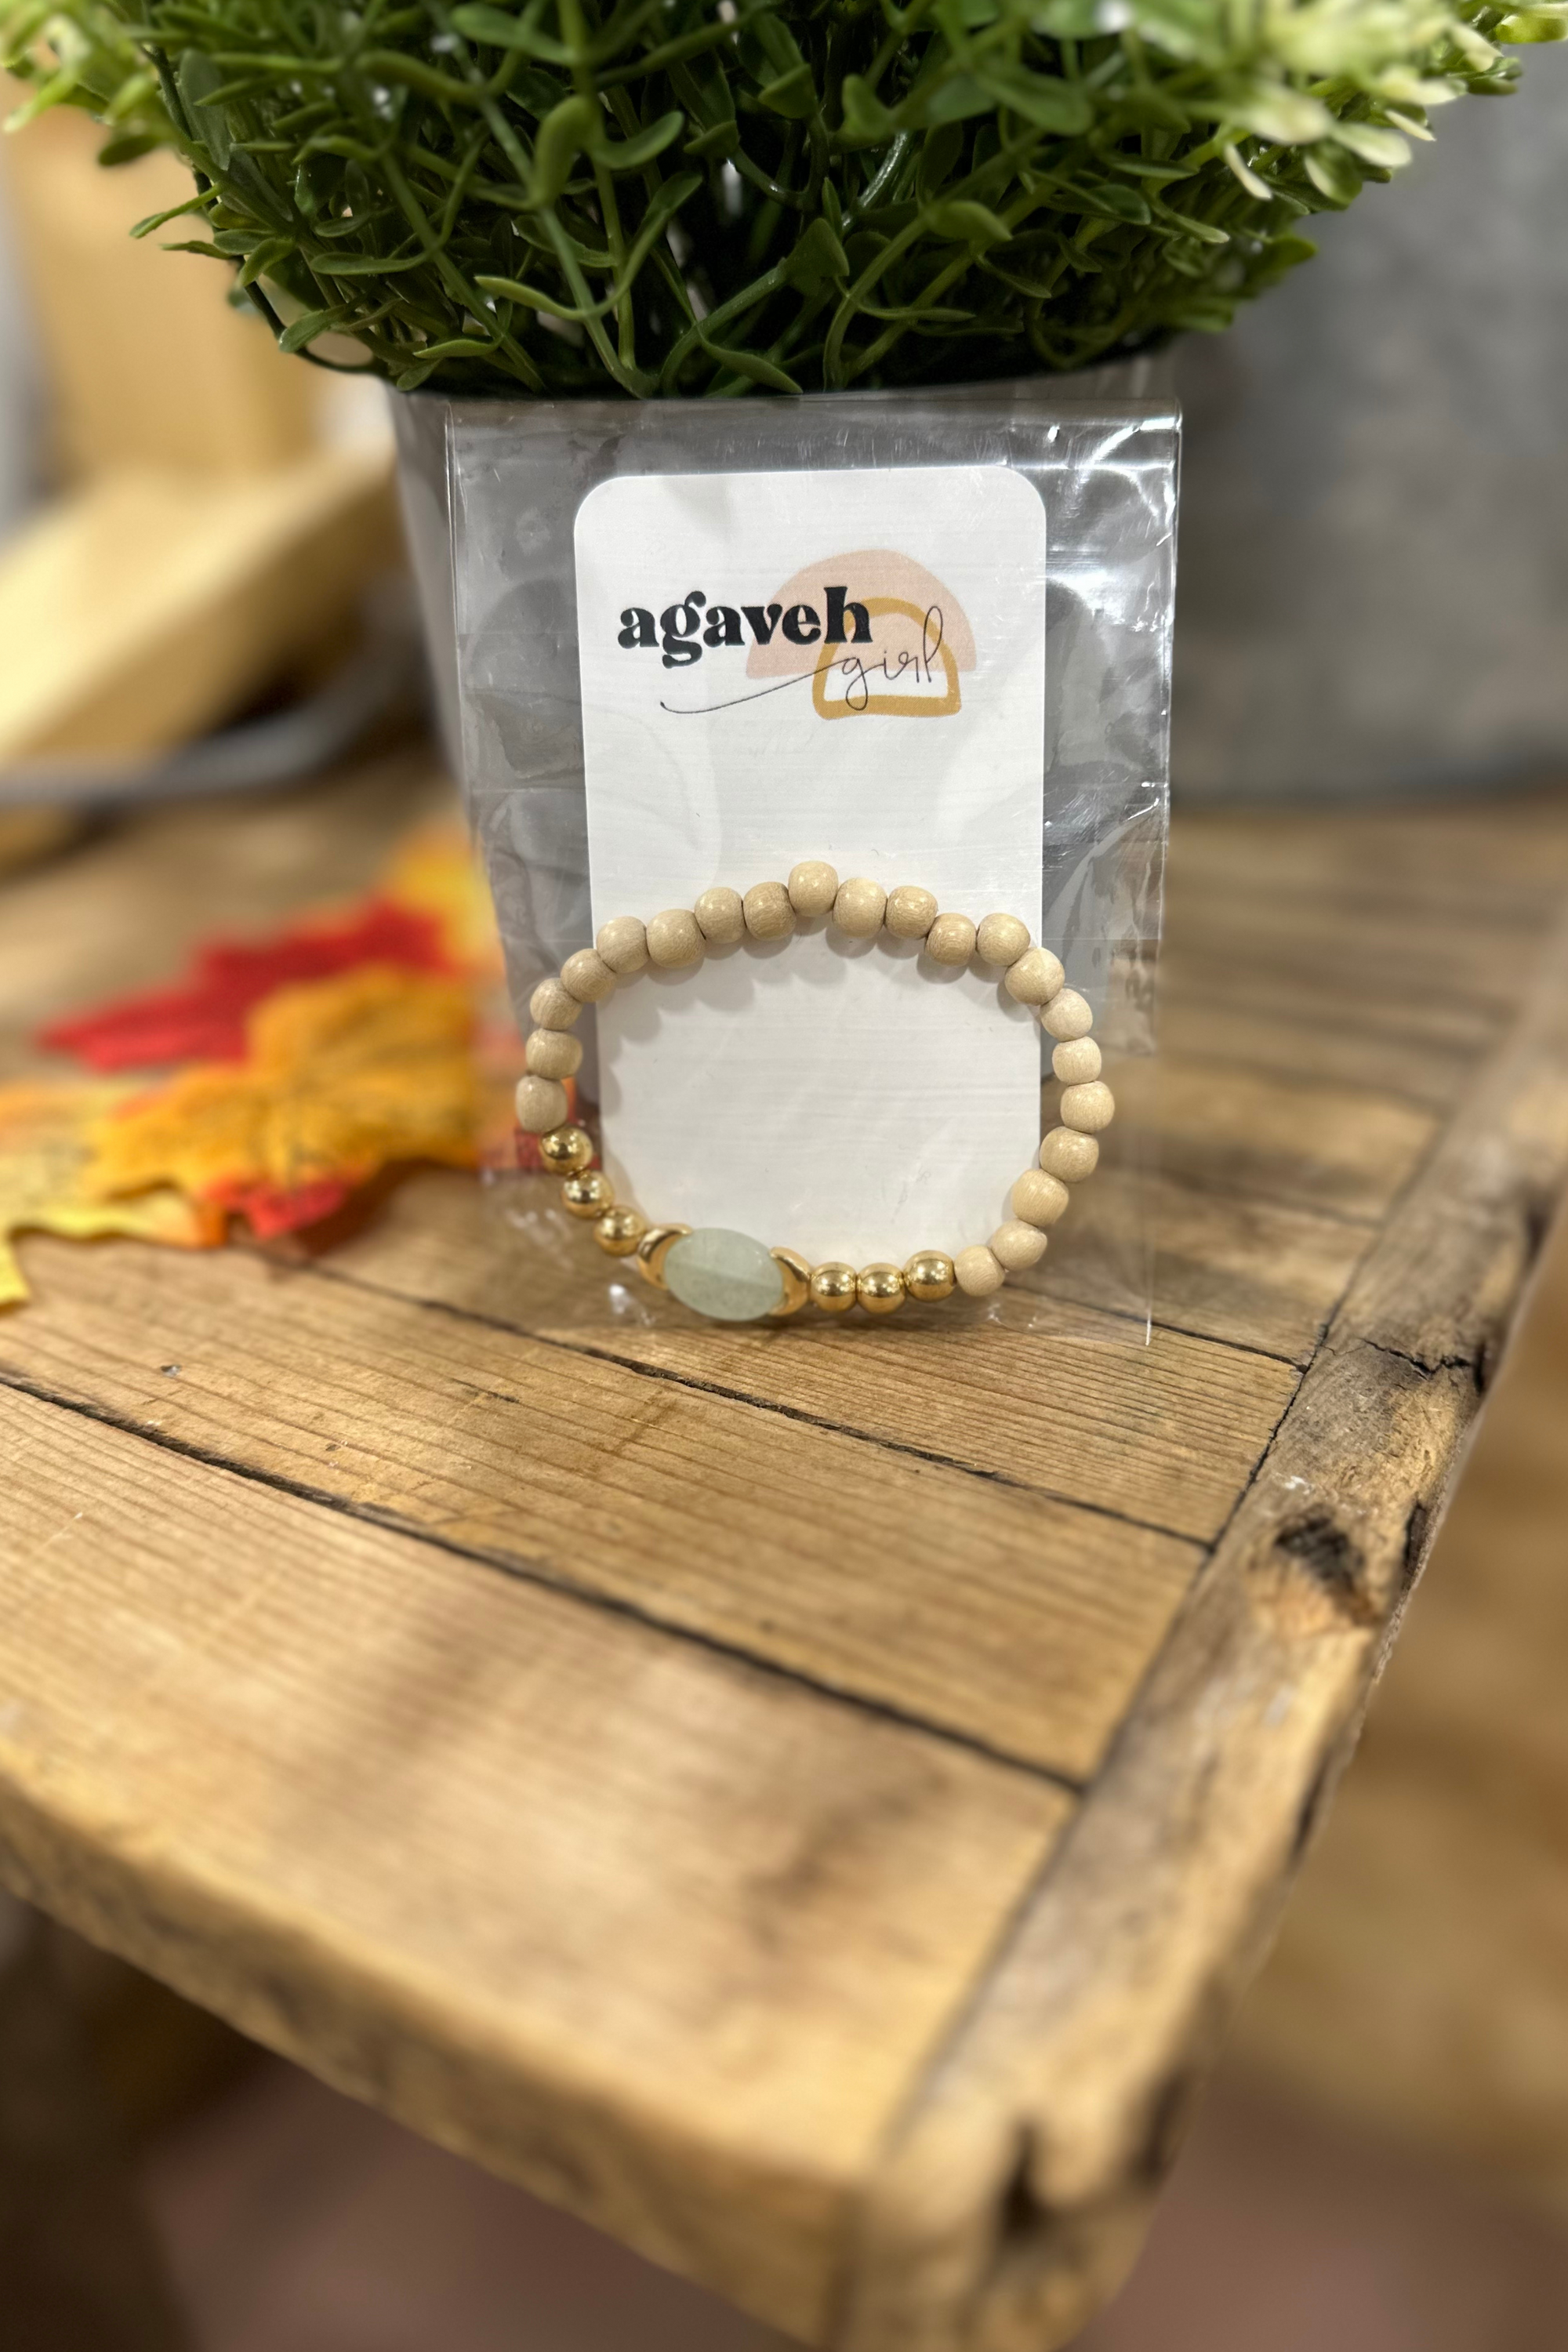 Agaveh Girl- Gem Bracelet